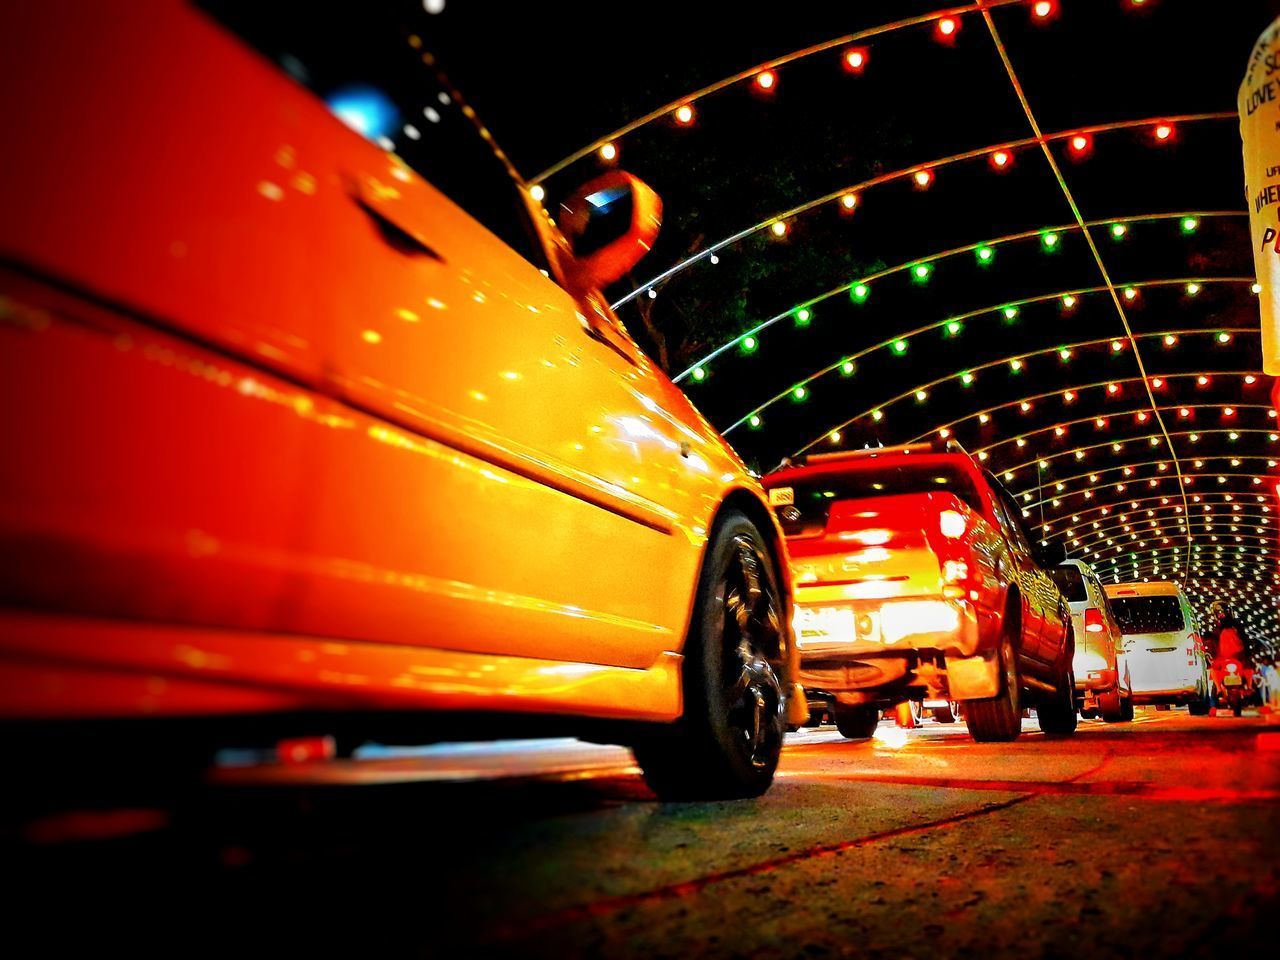 CARS IN ILLUMINATED CITY AT NIGHT